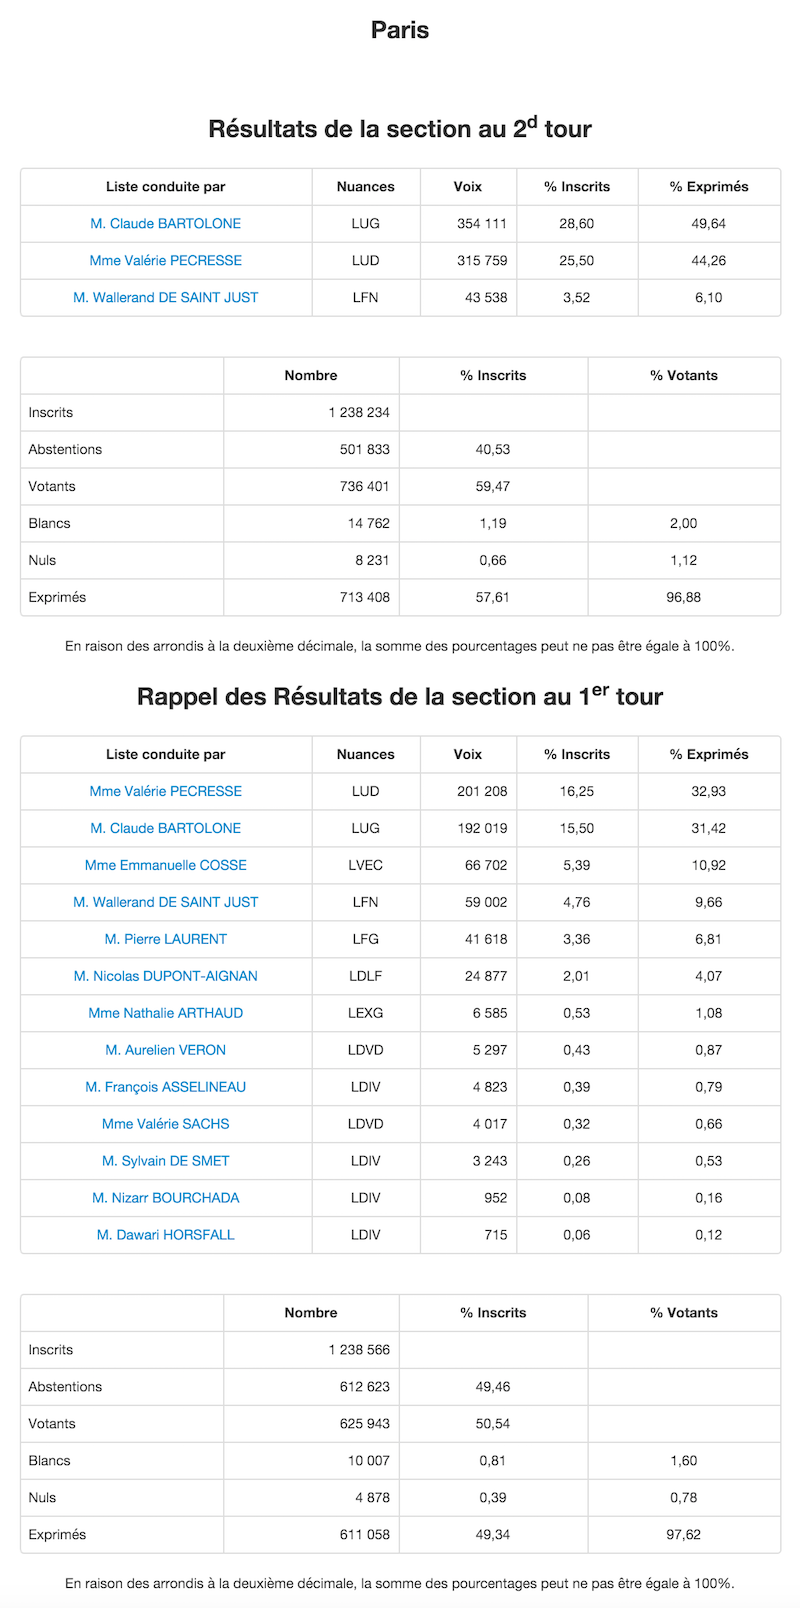 Régionales 2015 et 2010 dans le 12e arrondissement de Paris